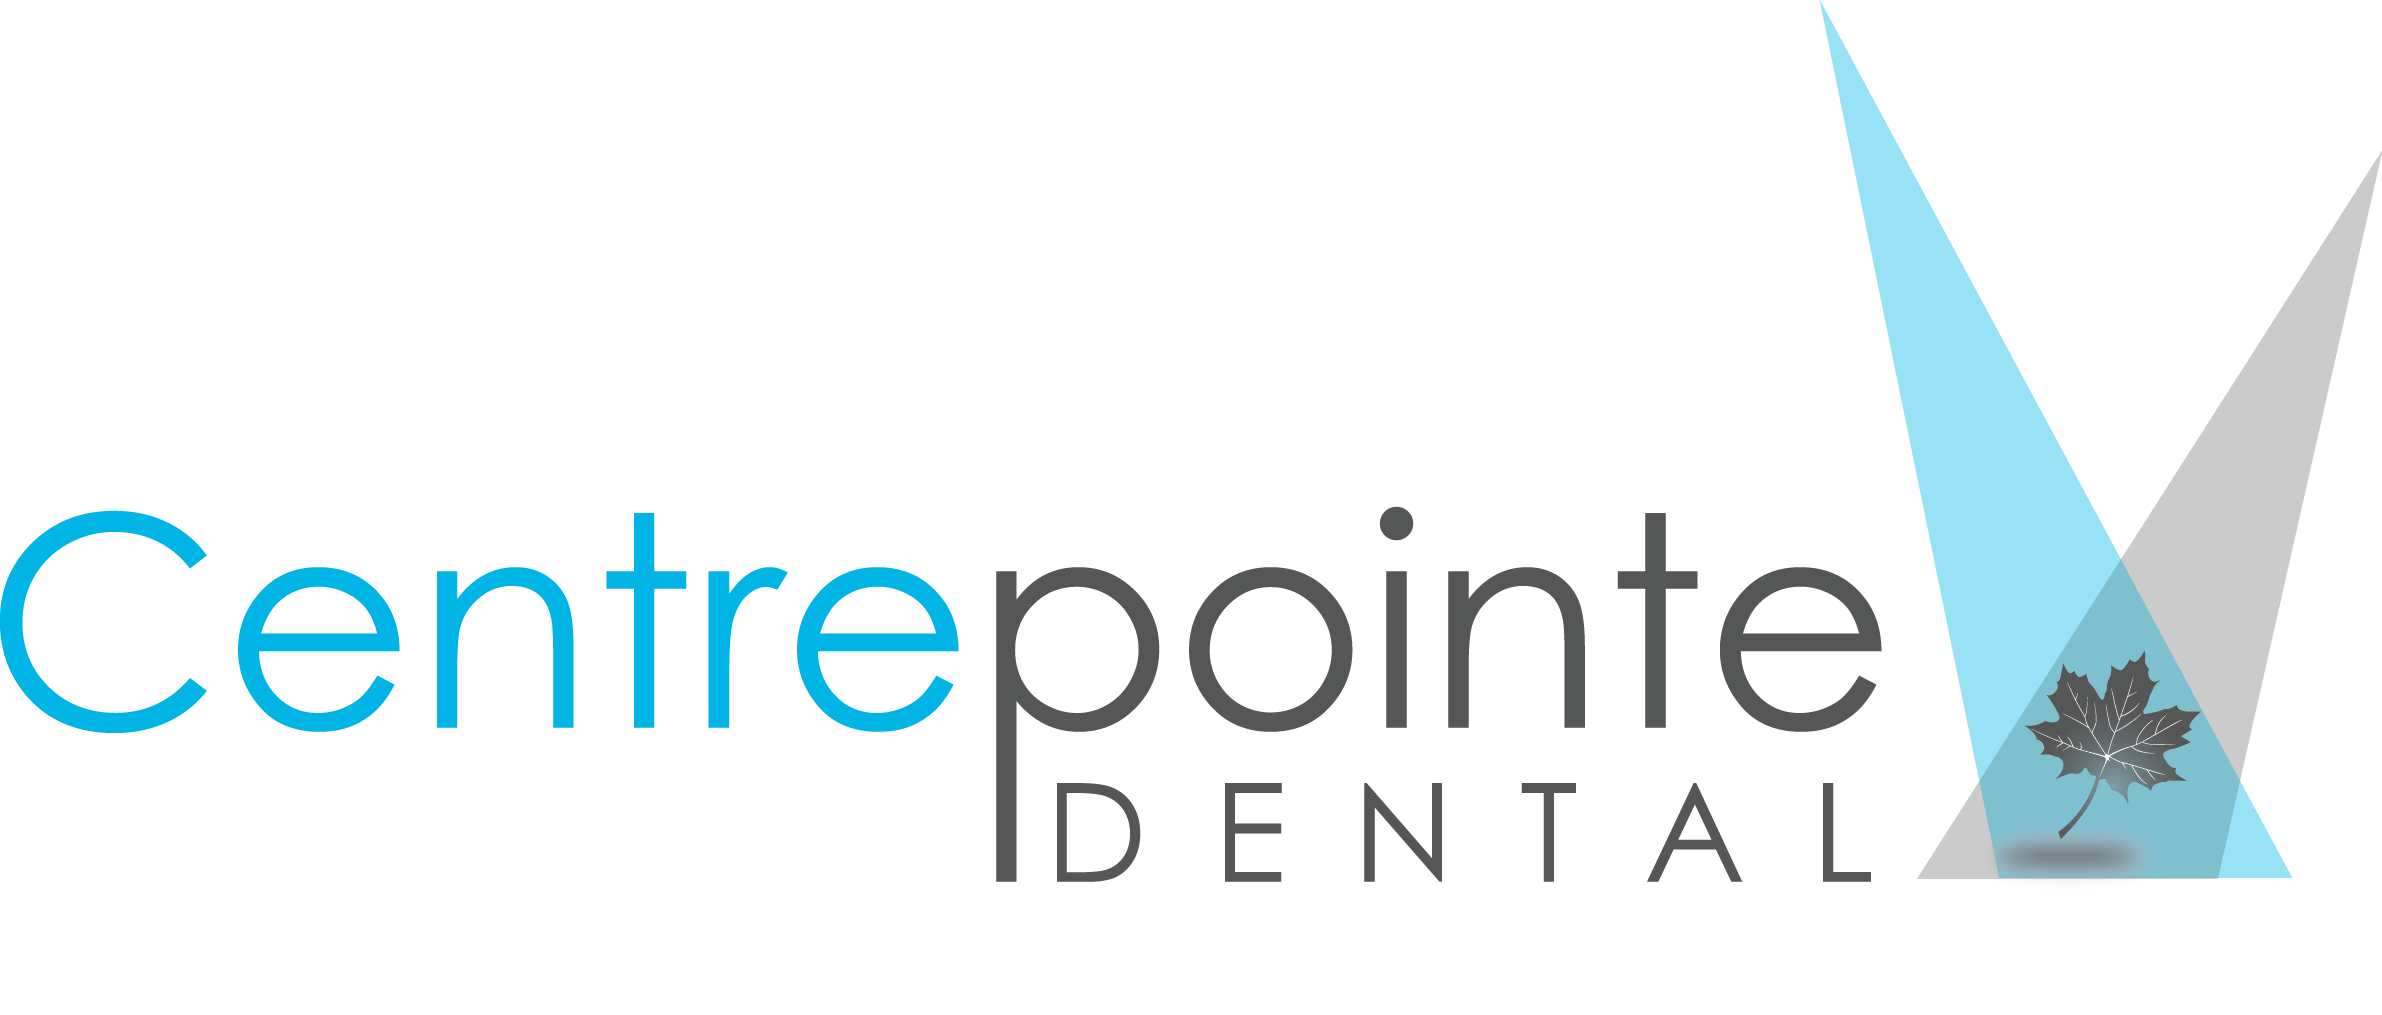 Centrepointe Dental - Logo